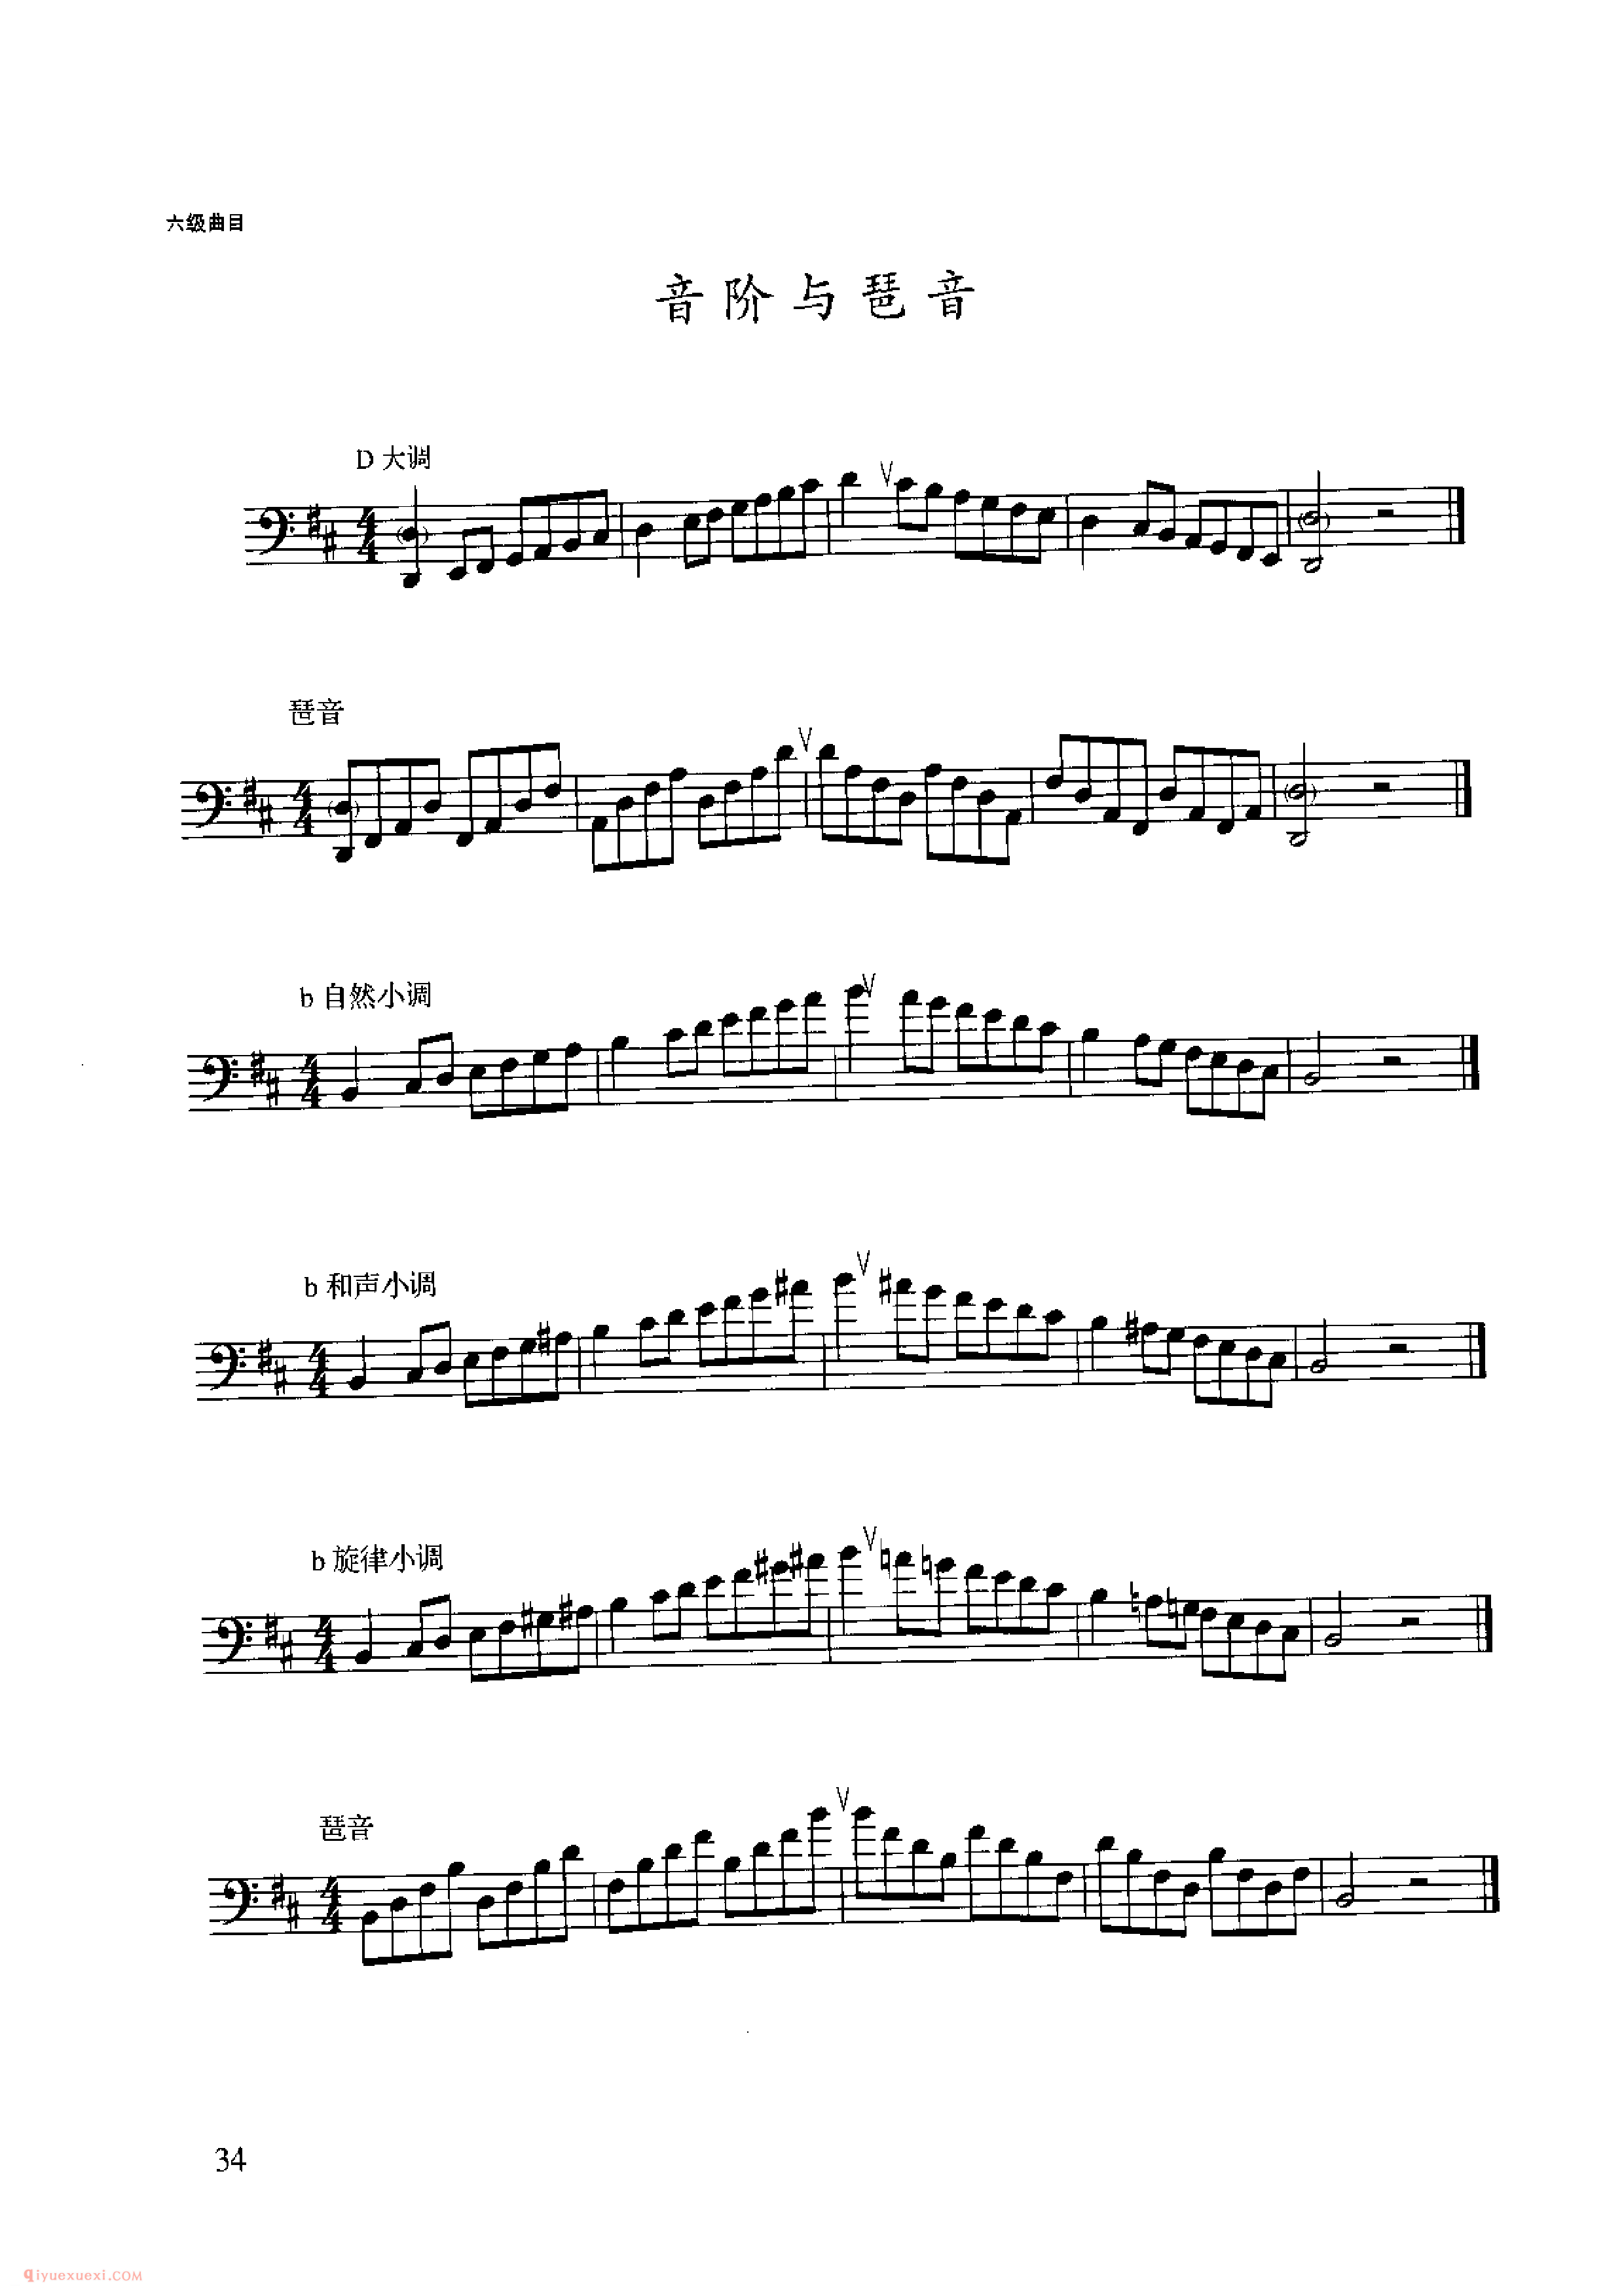 长号考级乐谱《六级:音阶与琶音 D大调 b小调》